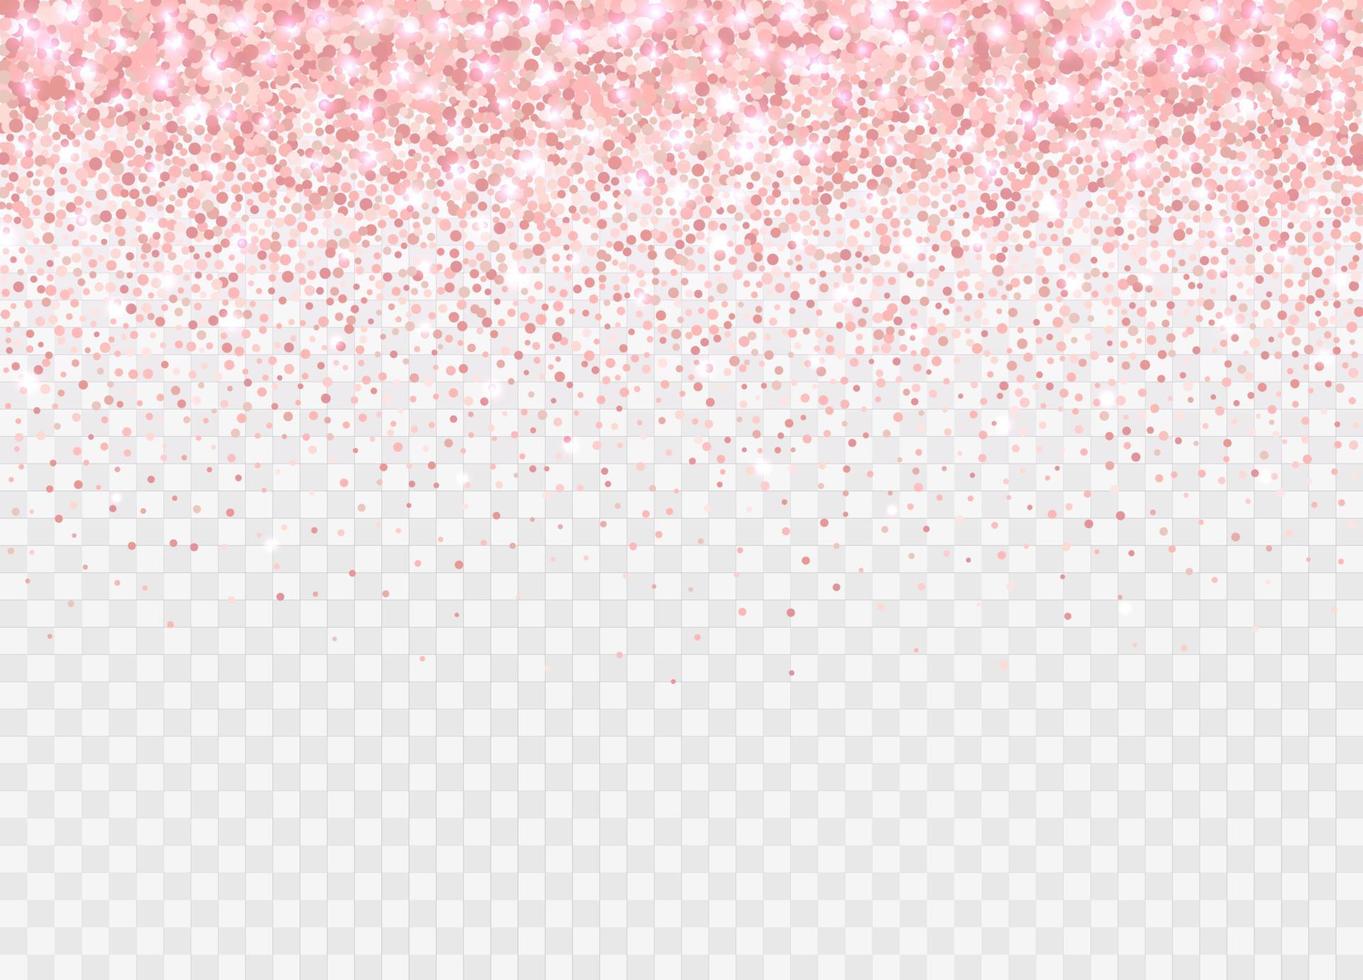 particules de paillettes d'or rose isolées sur fond transparent. chute de confettis étincelants. vecteur